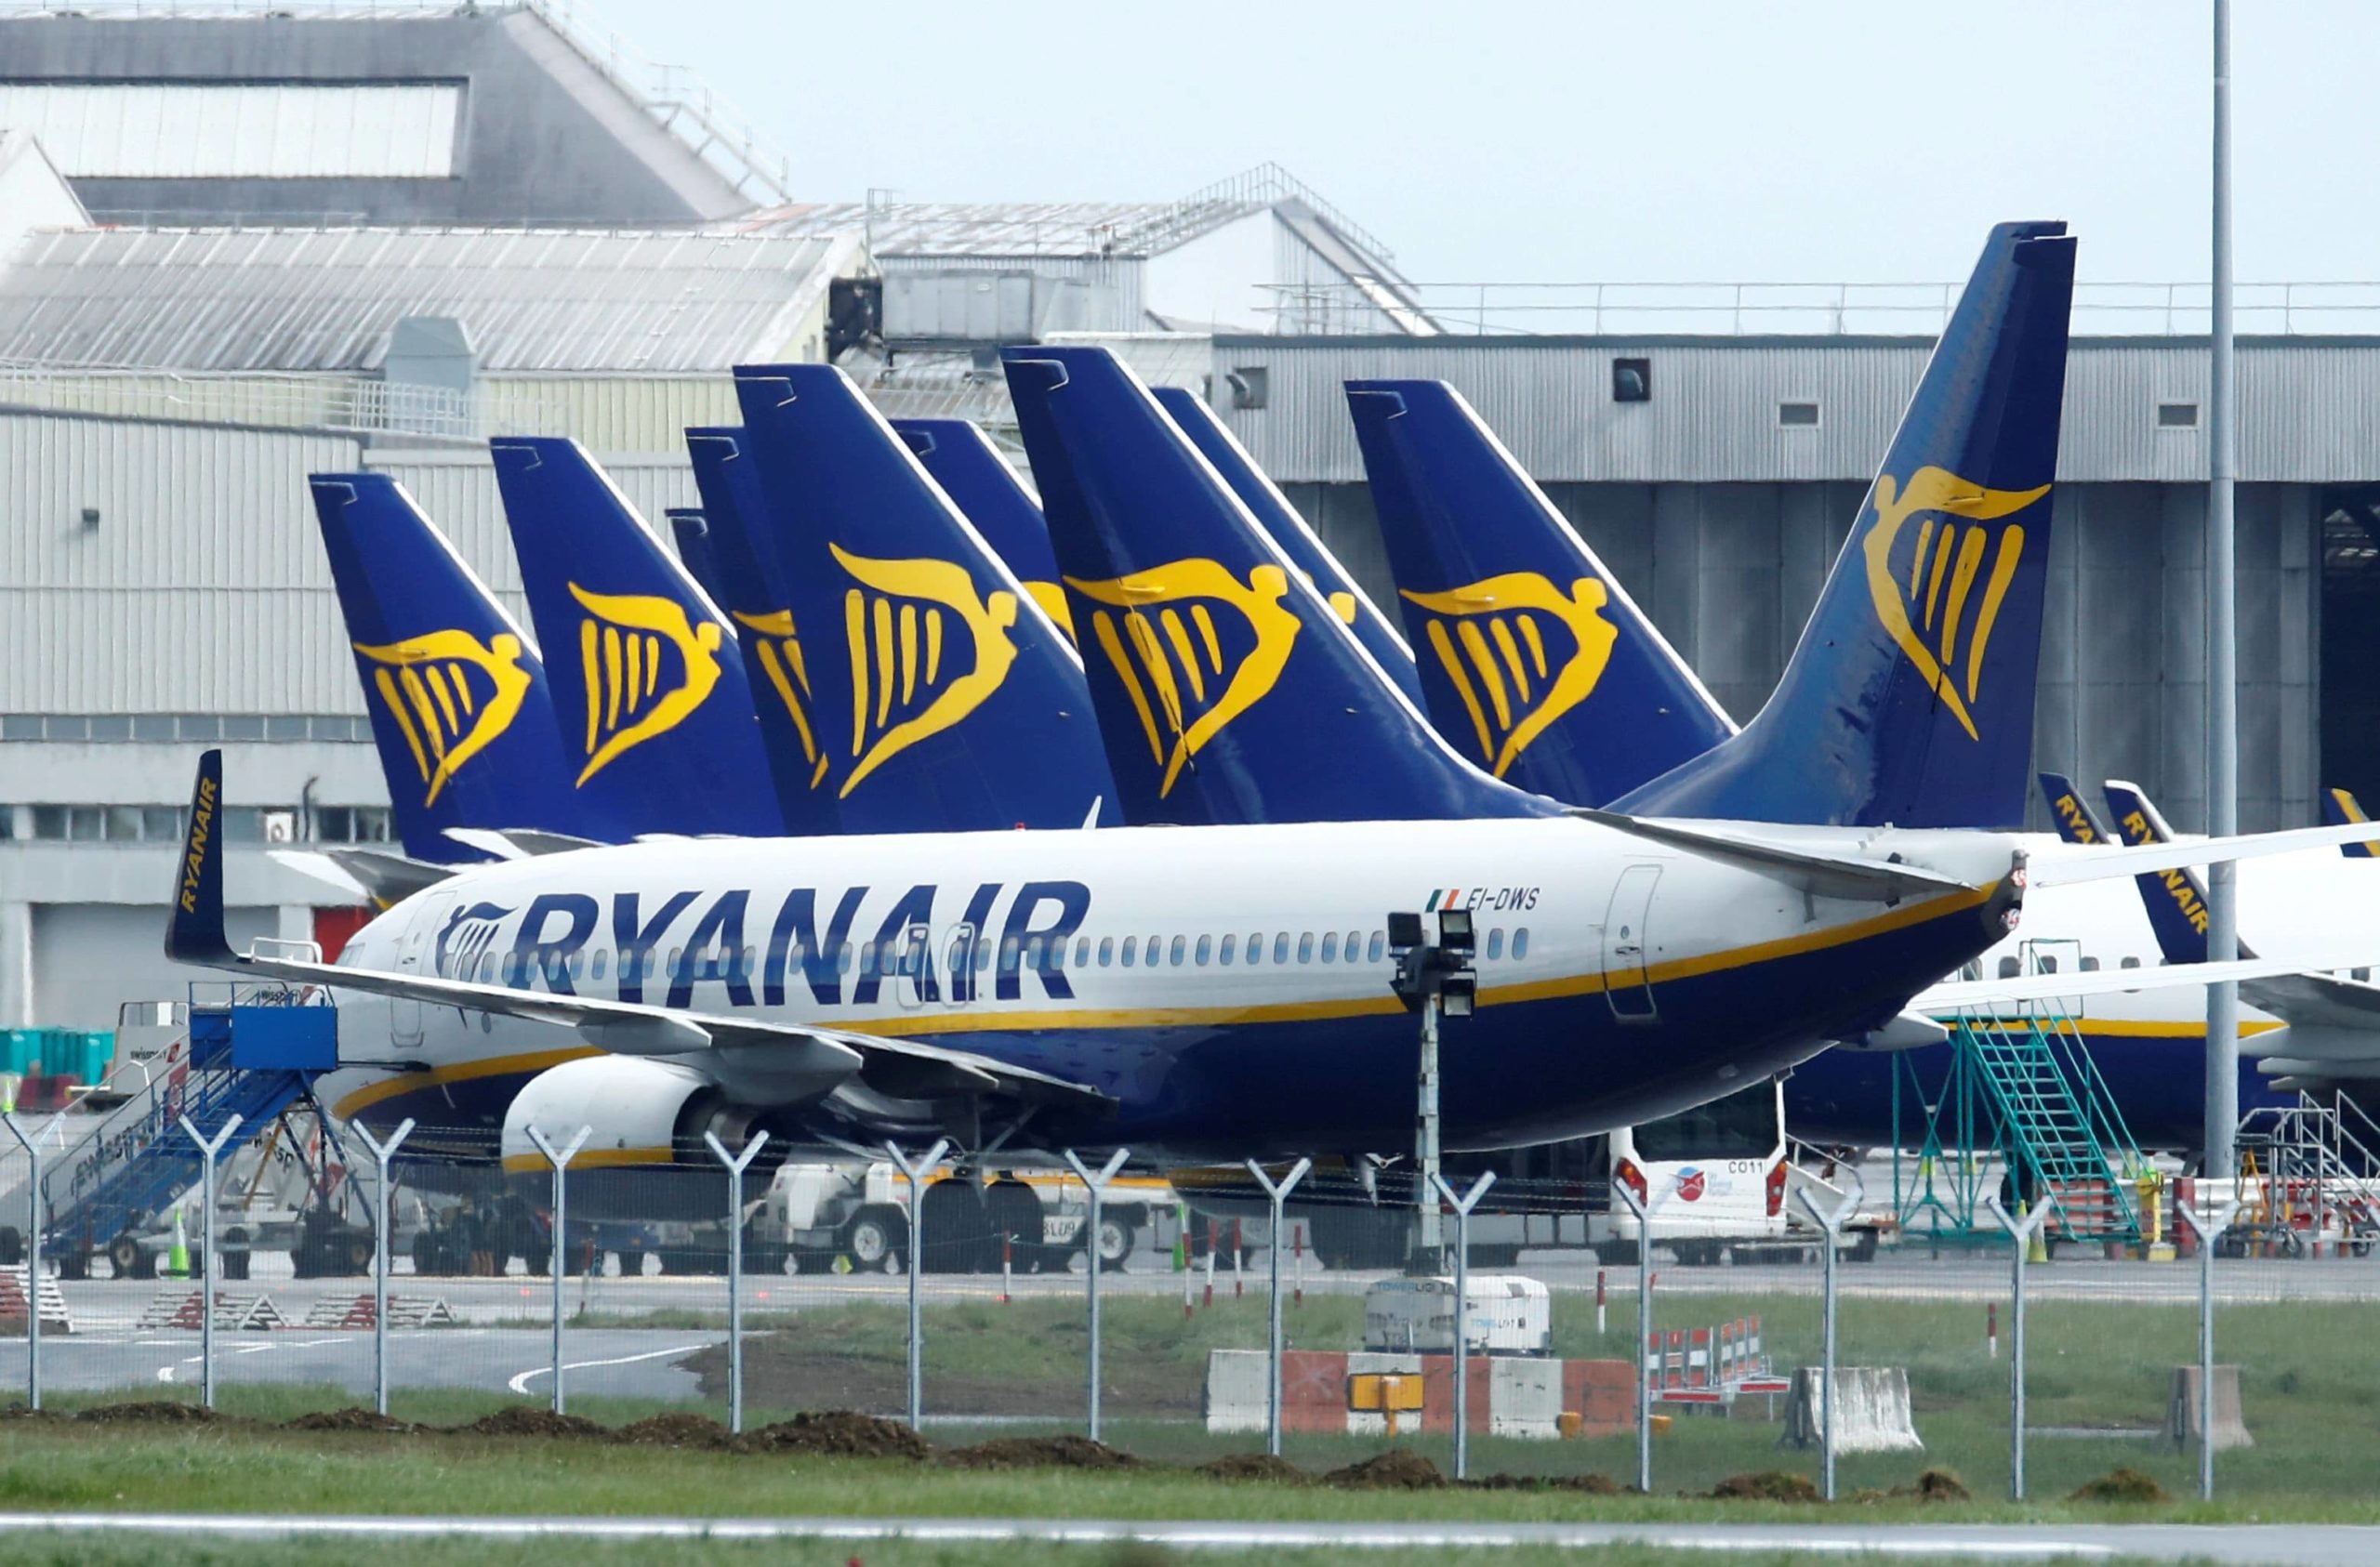 La nouvelle liaison sera assurée chaque dimanche par la compagnie aérienne Irlandaise Ryanair en partenariat avec l’ONMT